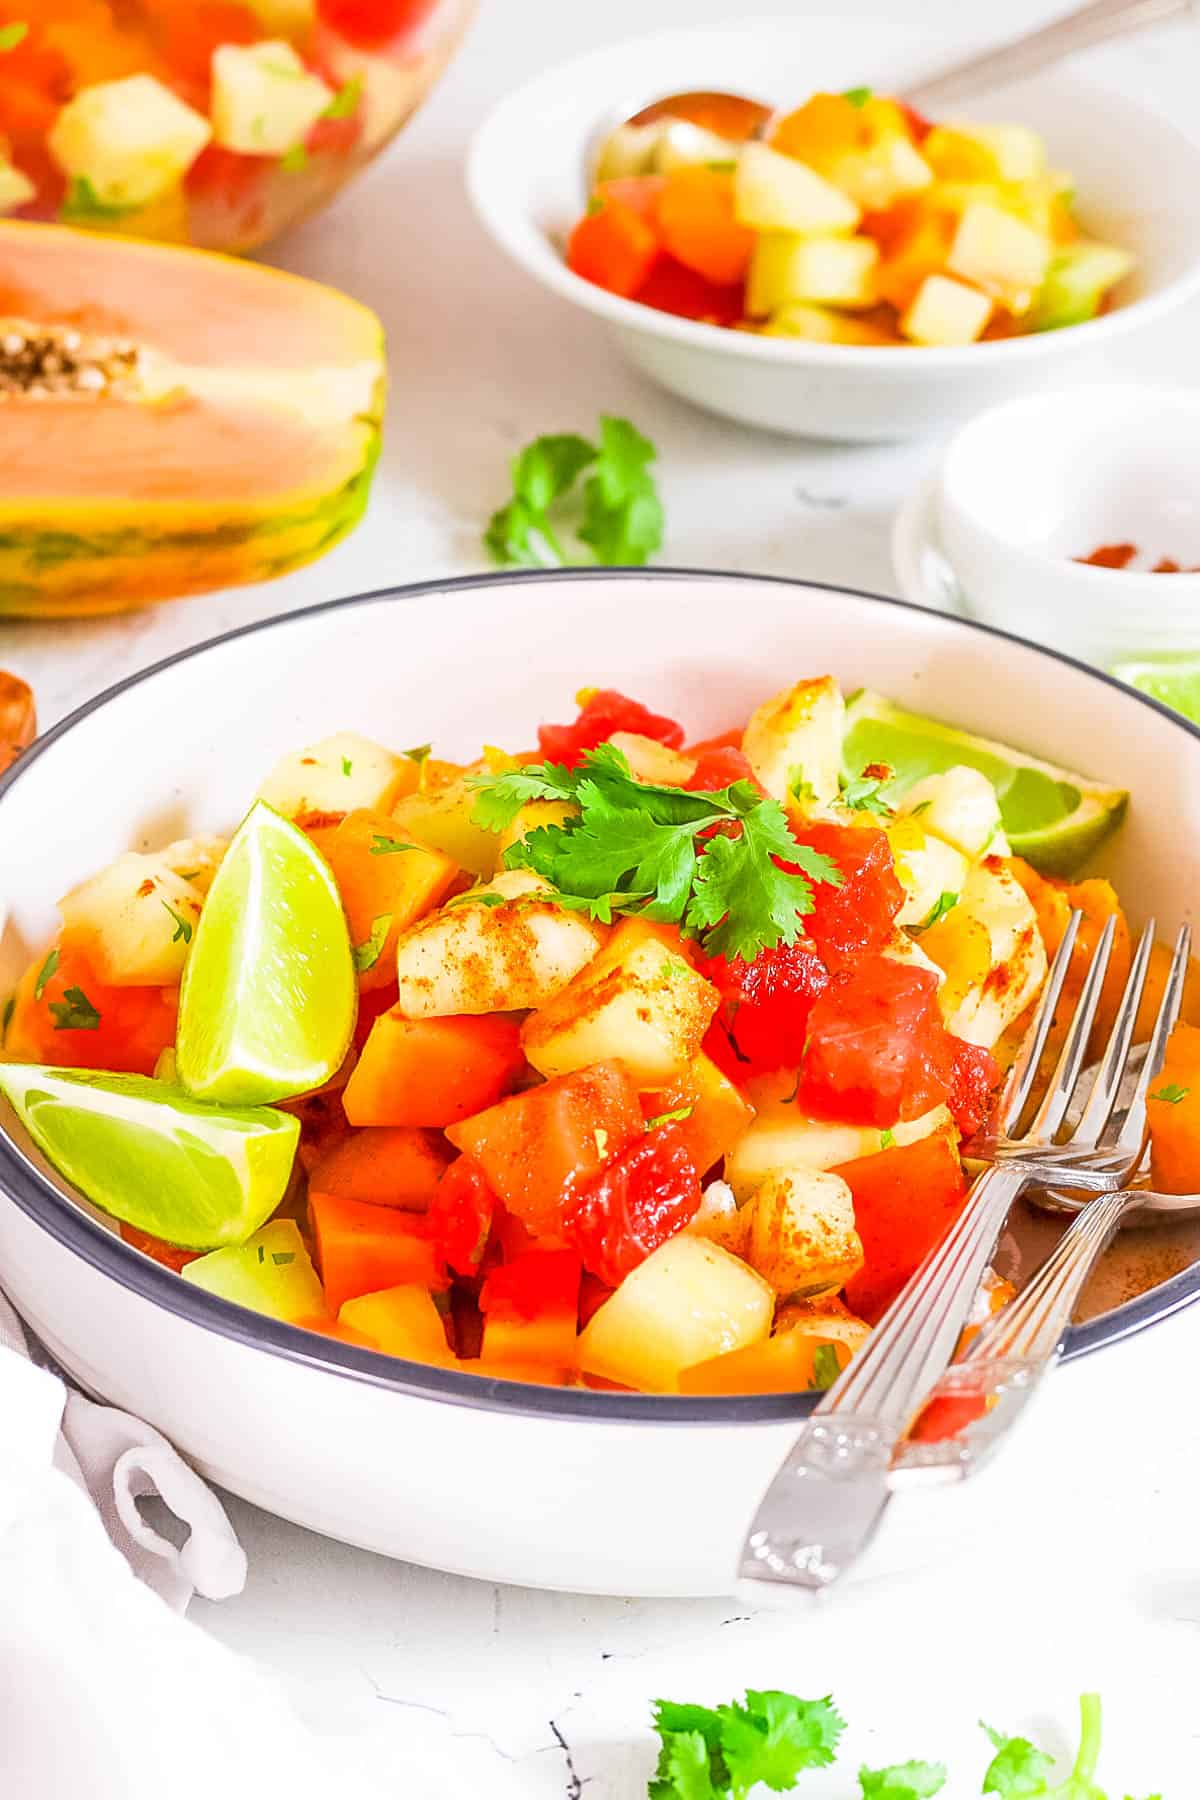 Salade de fruits mexicaine avec assaisonnement chili lime, coriandre et citron vert frais servie dans un bol avec une fourchette.